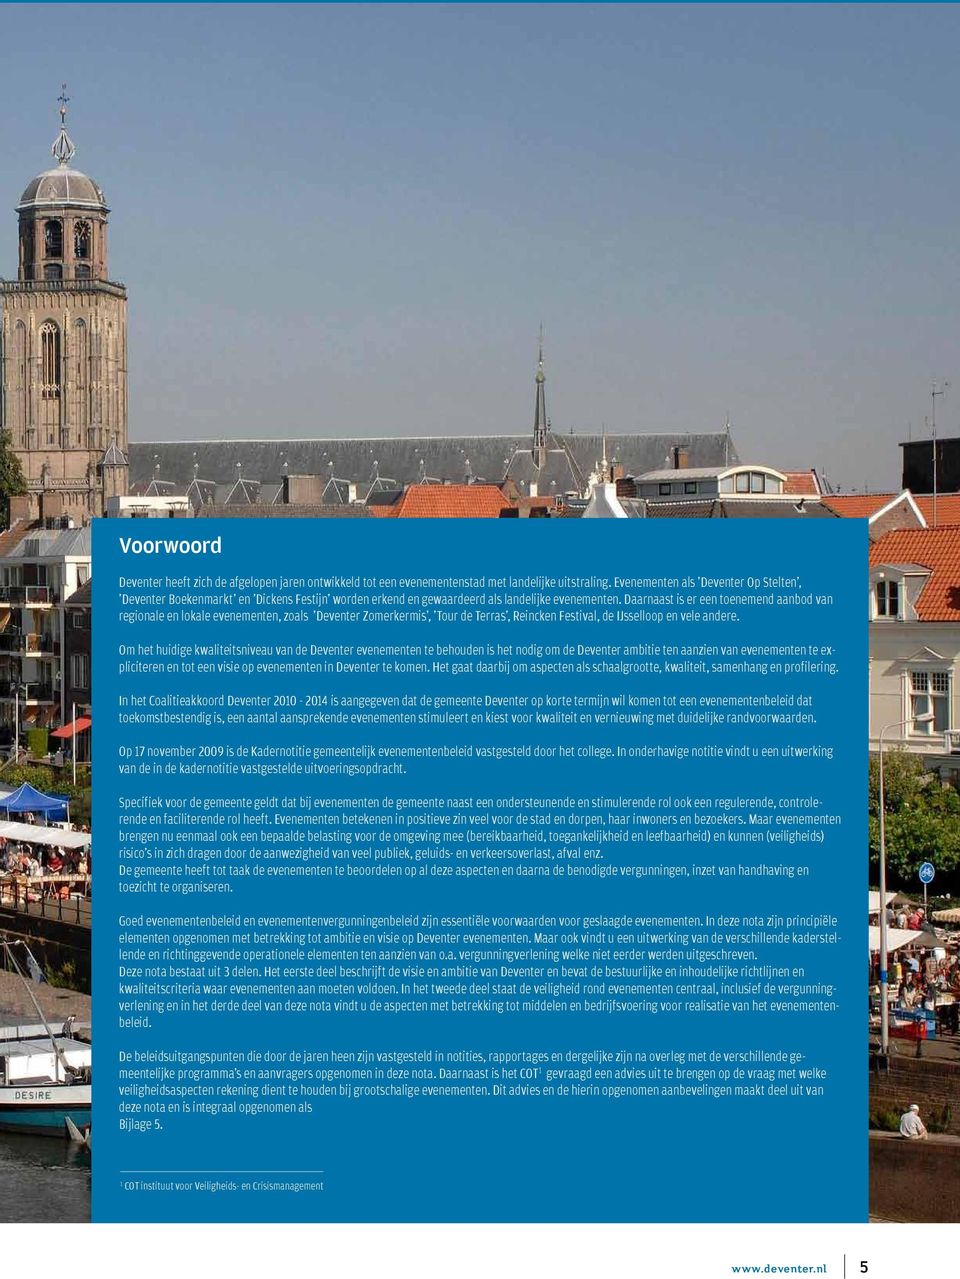 Daarnaast is er een toenemend aanbod van regionale en lokale evenementen, zoals 'Deventer Zomerkermis', 'Tour de Terras', Reincken Festival, de IJsselloop en vele andere.